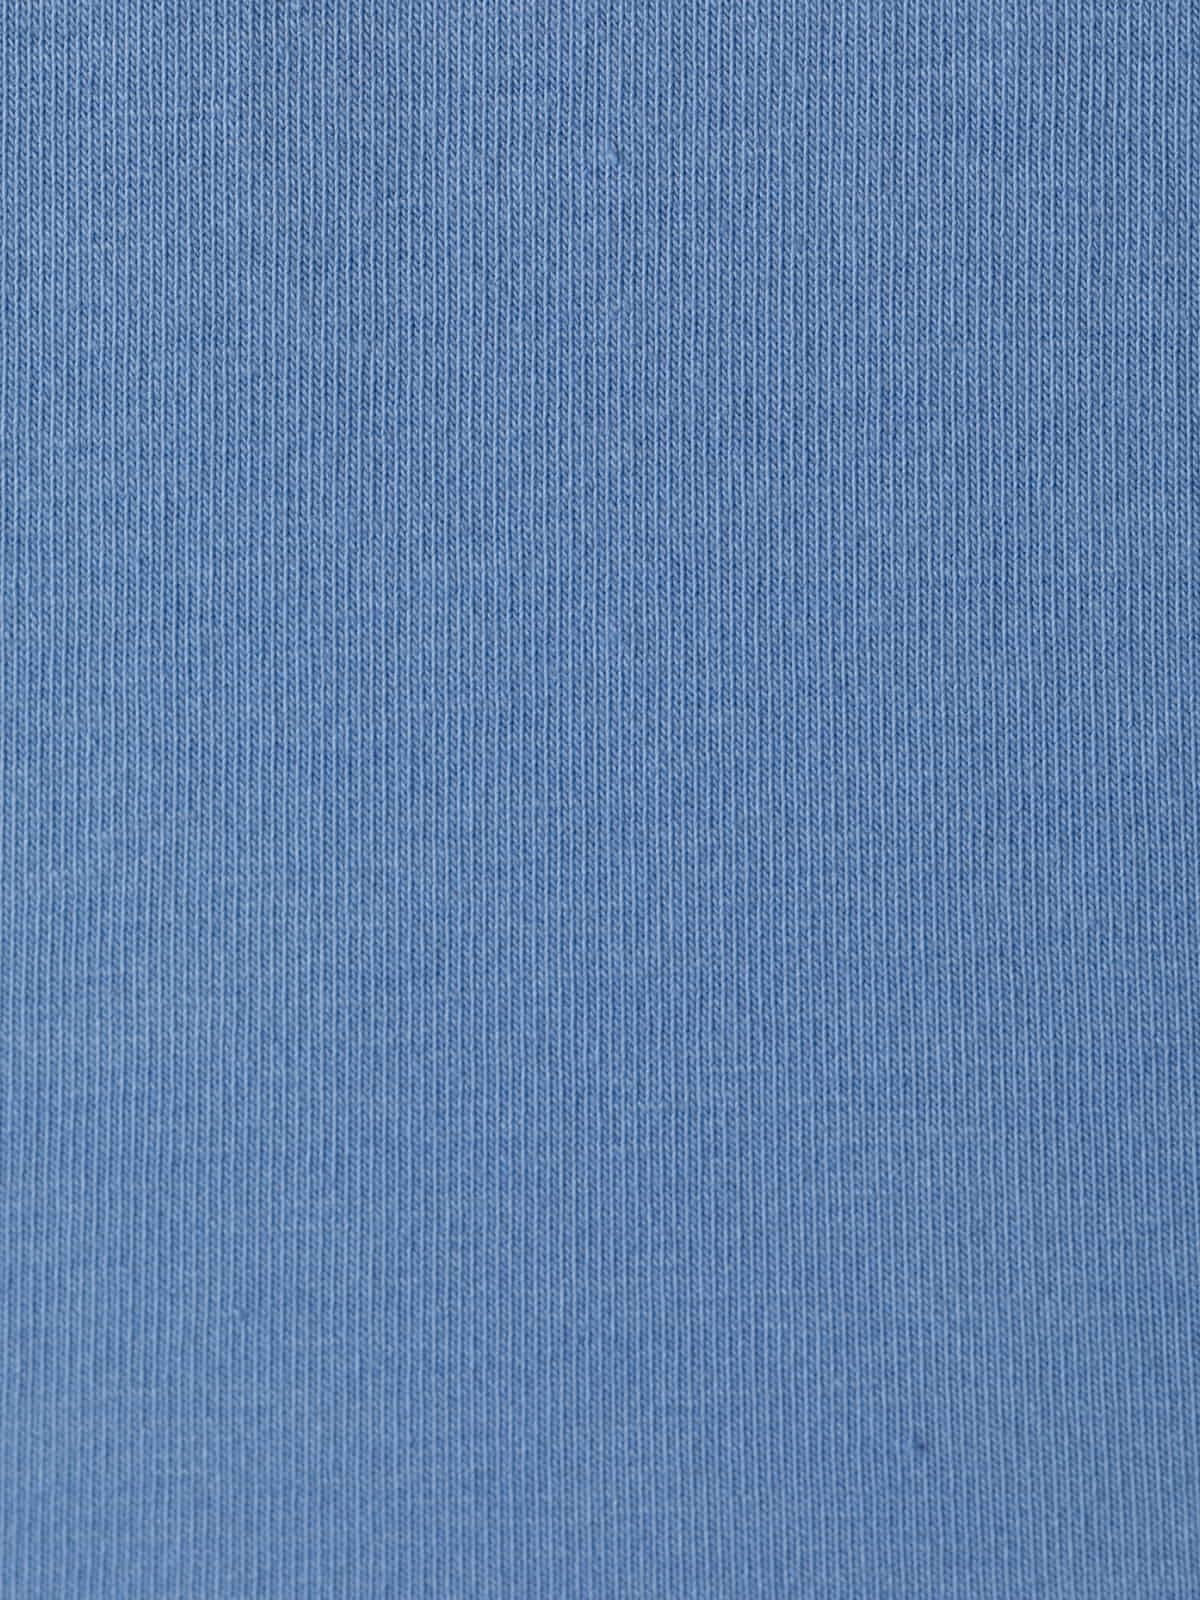 Camiseta algodón 100% escote en pico color Azul